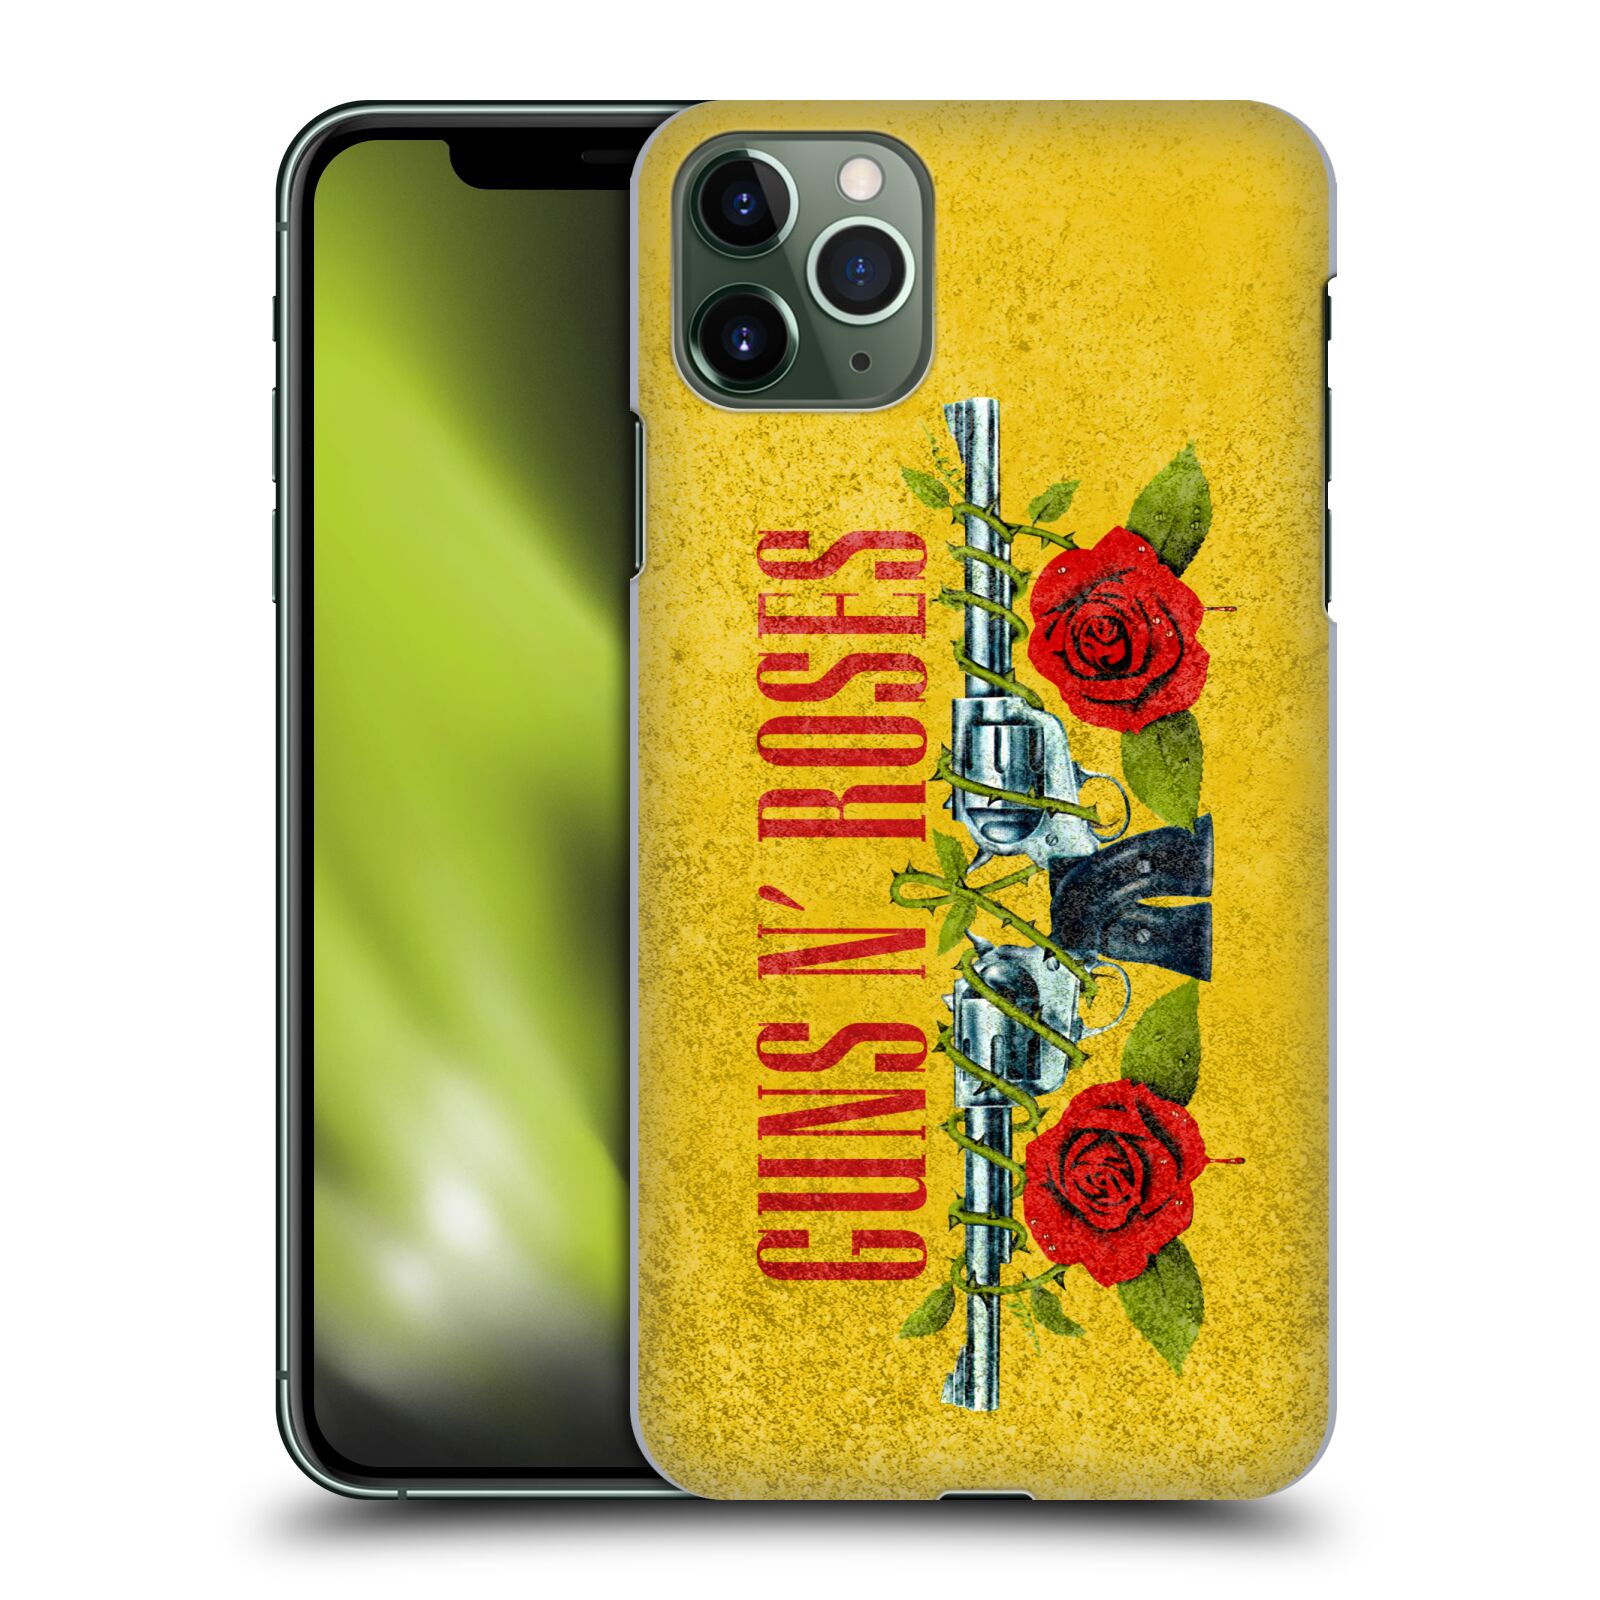 Pouzdro na mobil Apple Iphone 11 PRO MAX - HEAD CASE - hudební skupina Guns N Roses pistole a růže žluté pozadí